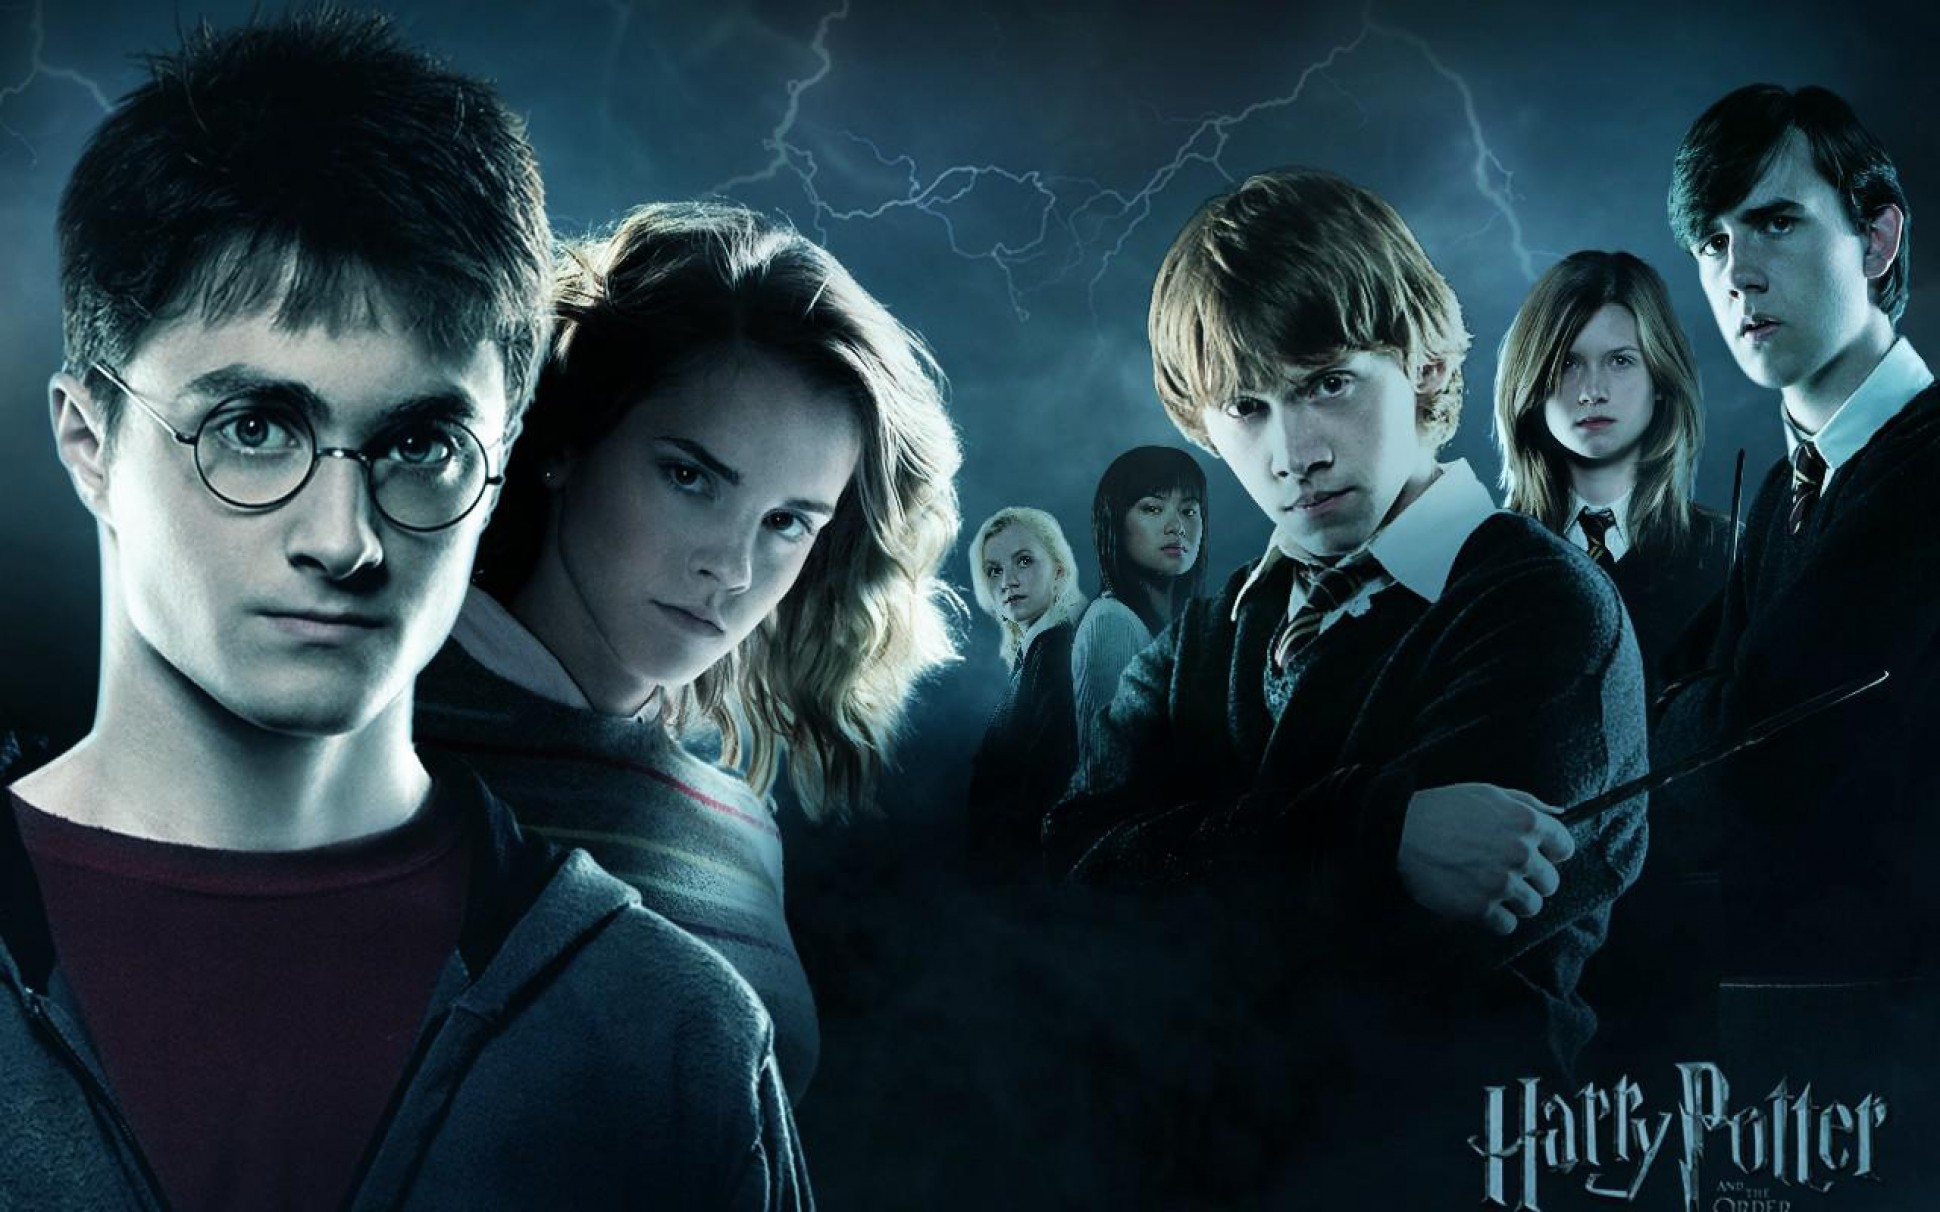 Co wiesz o Harrym Potterze i jego przyjaciołach?